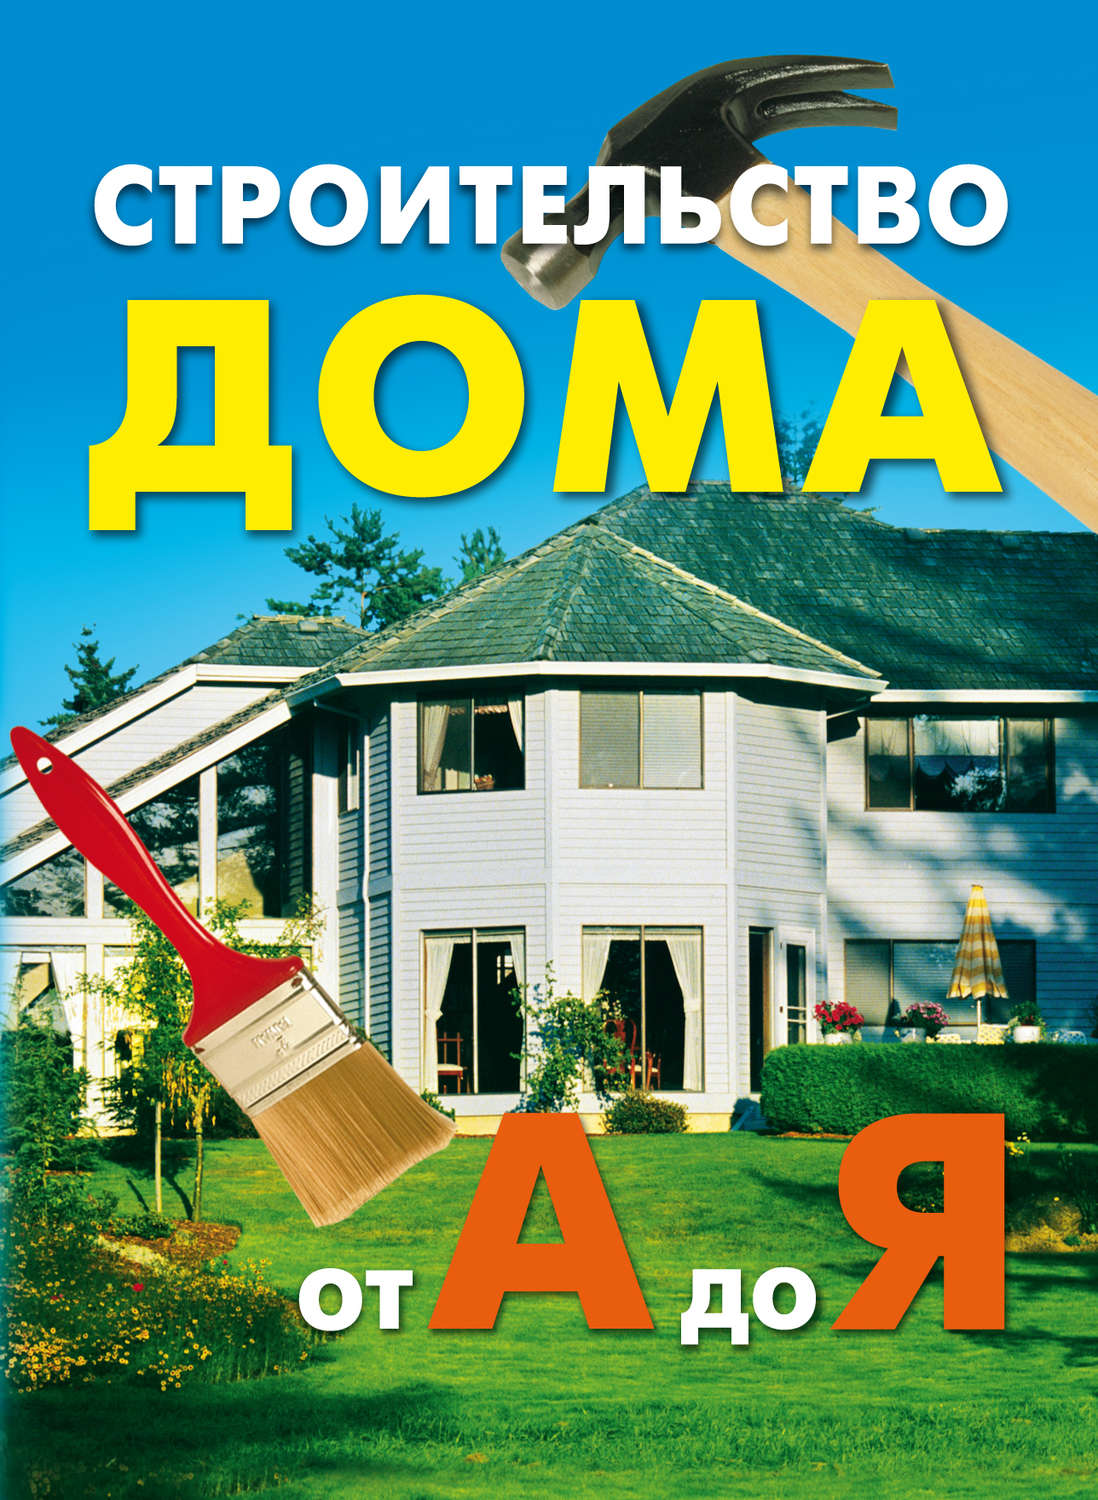 Как построить сельский дом. Шепелев А.М. 1980-1995